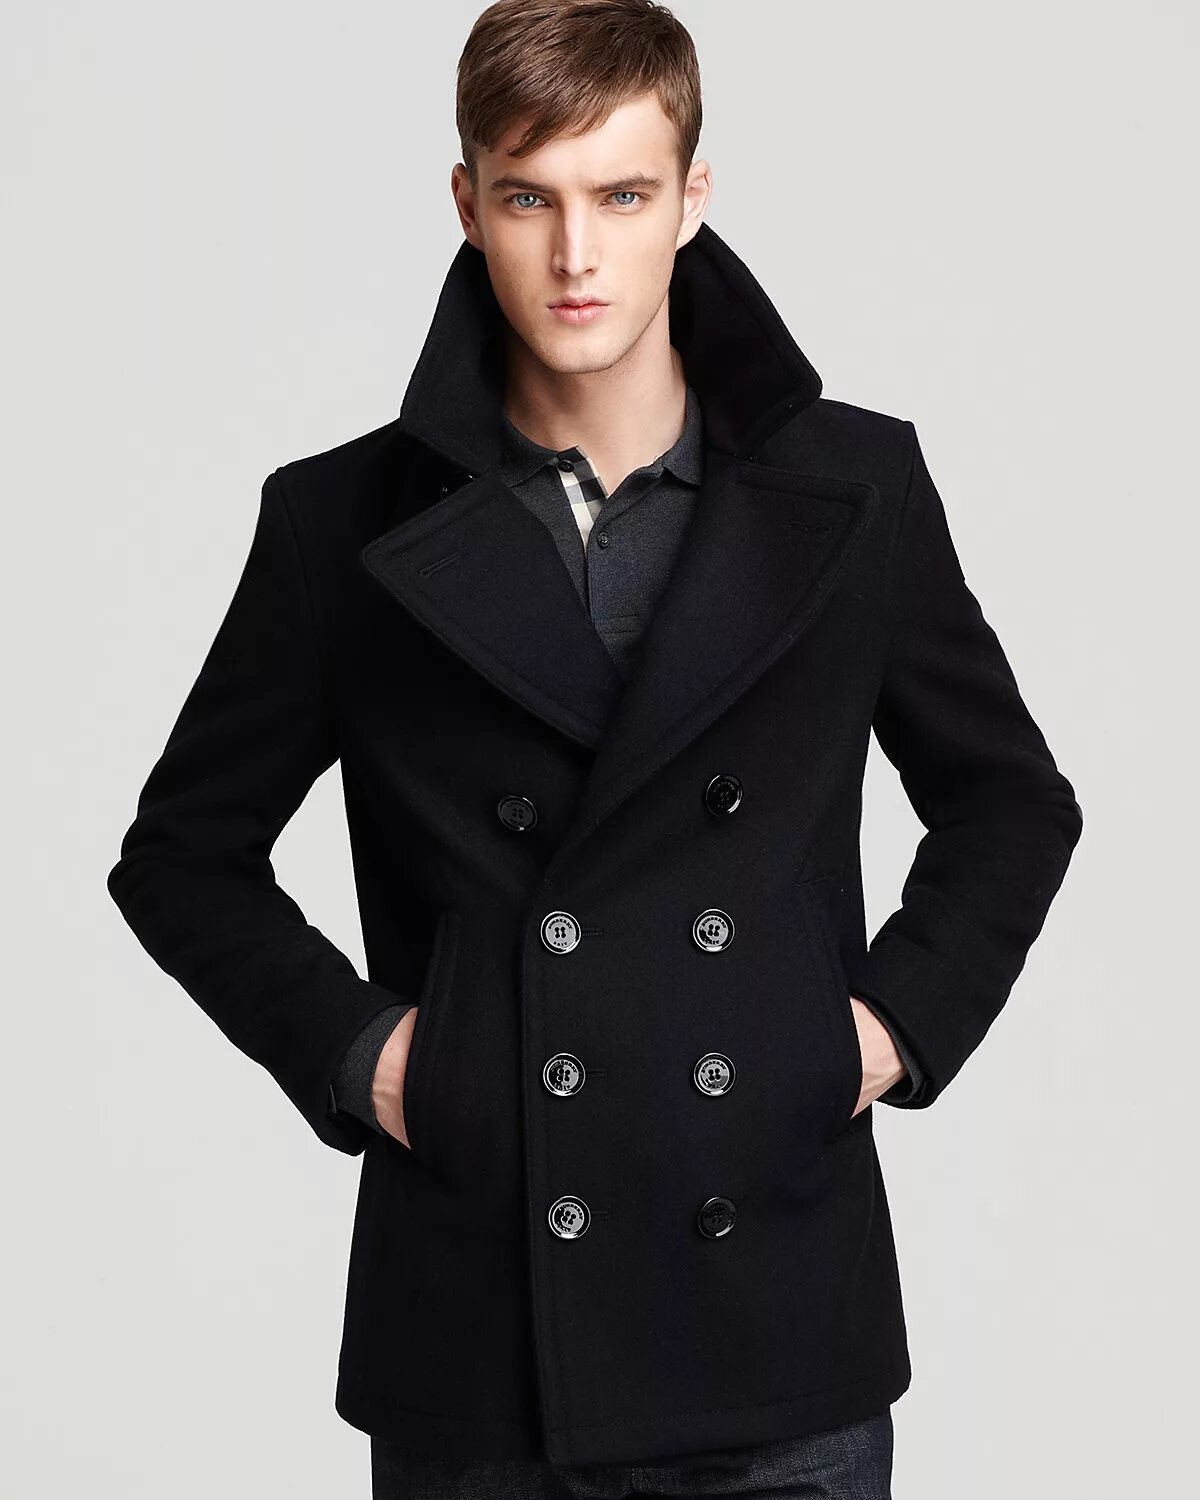 Мужское укороченное пальто. Пальто Барбери черное мужское. Burberry Peacoat man. Burberry Brit Peacoat. Burberry Brit пальто мужское.